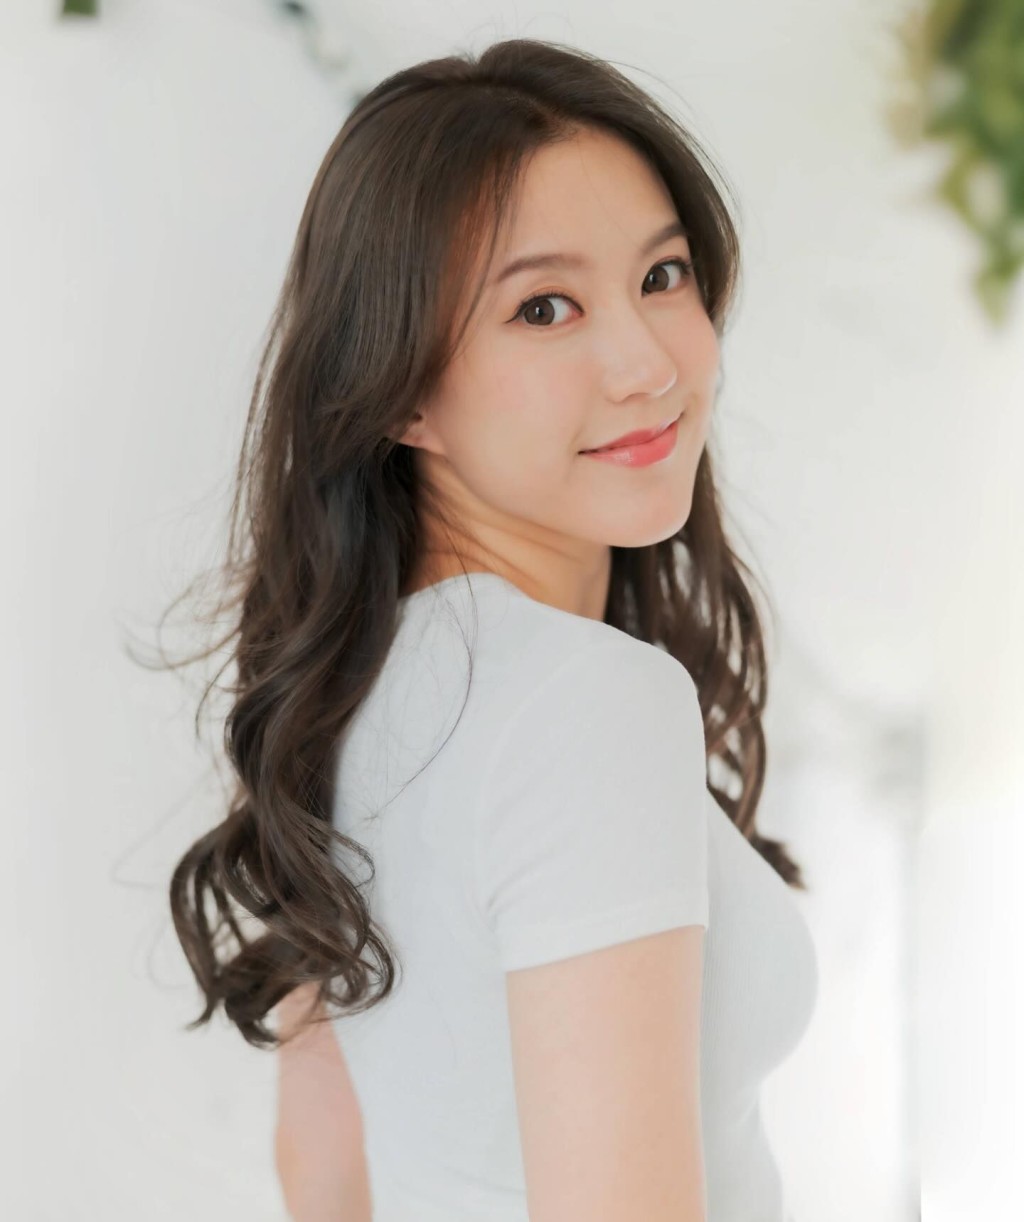 羅雪妍入行前任職平面模特兒。